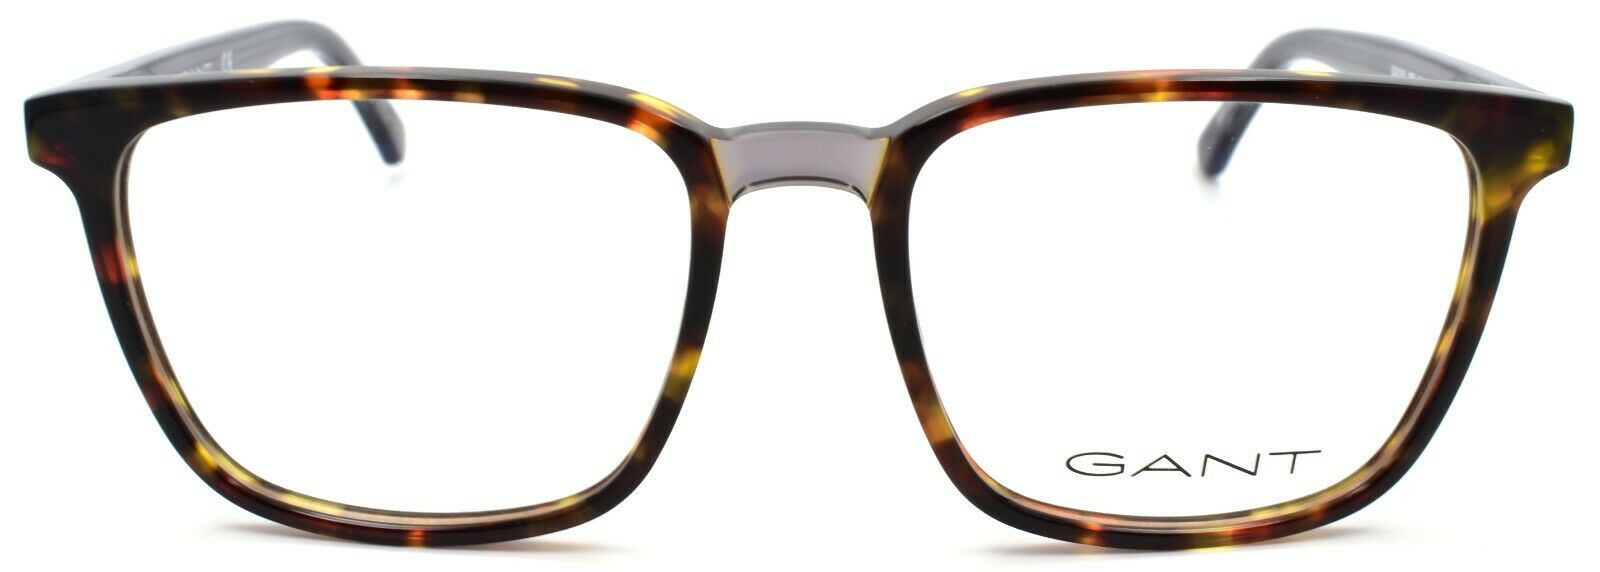 2-GANT GA3183 052 Eyeglasses Frames 51-17-145 Dark Havana-889214020789-IKSpecs